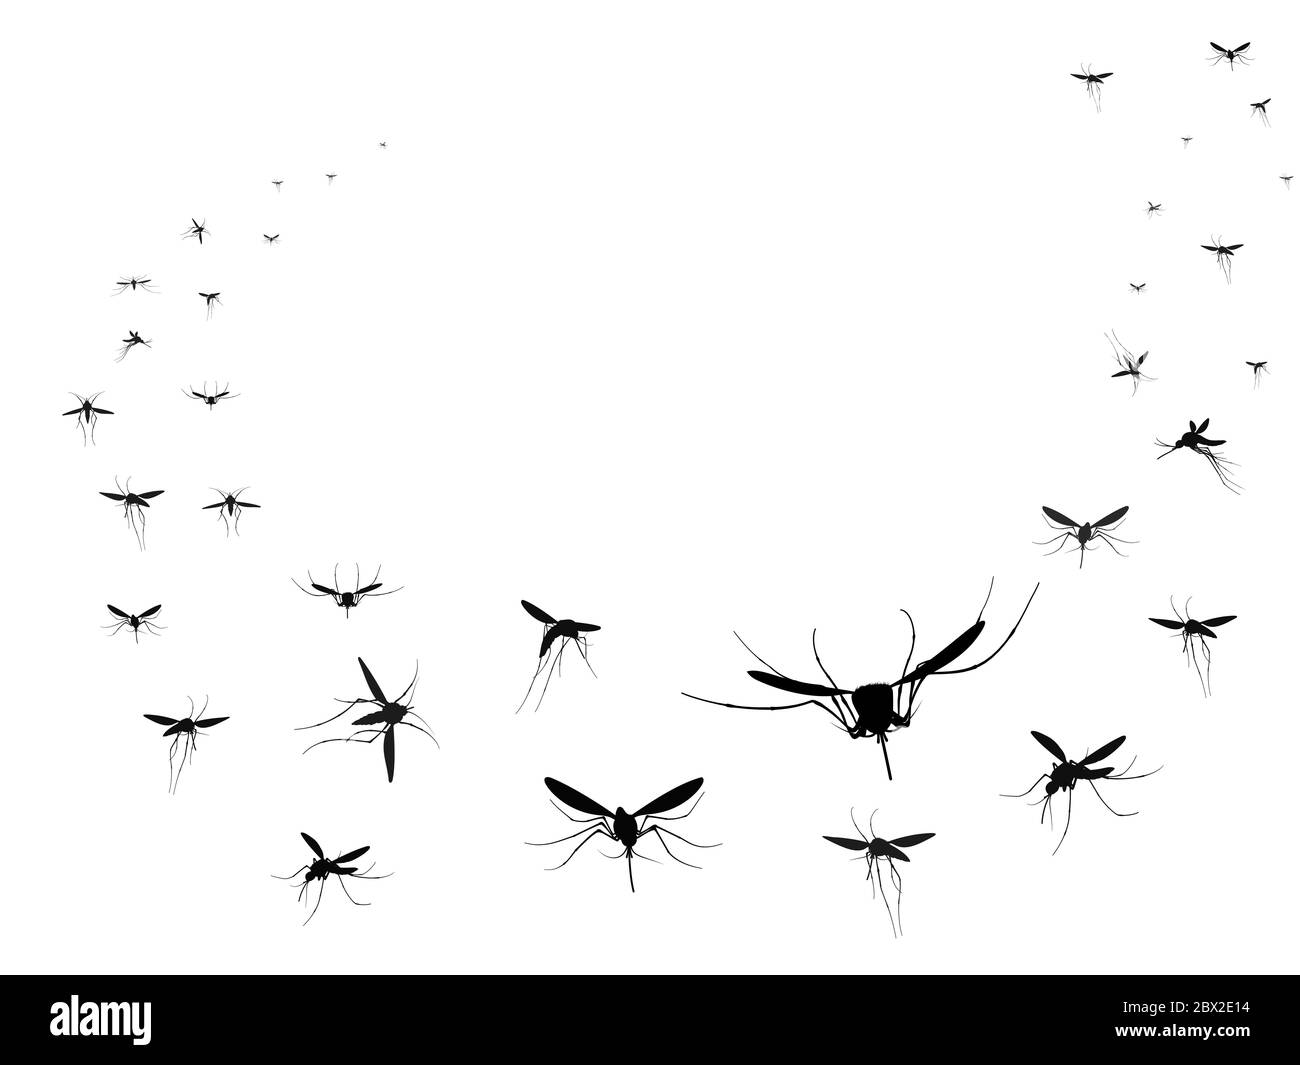 Fliegende Mücken Silhouetten Gruppe. Fliegende Insekten Schwarm Verbreitung Krankheiten gefährliche Infektion und Viren, schwarze Welle Vektor-Mücken Stock Vektor